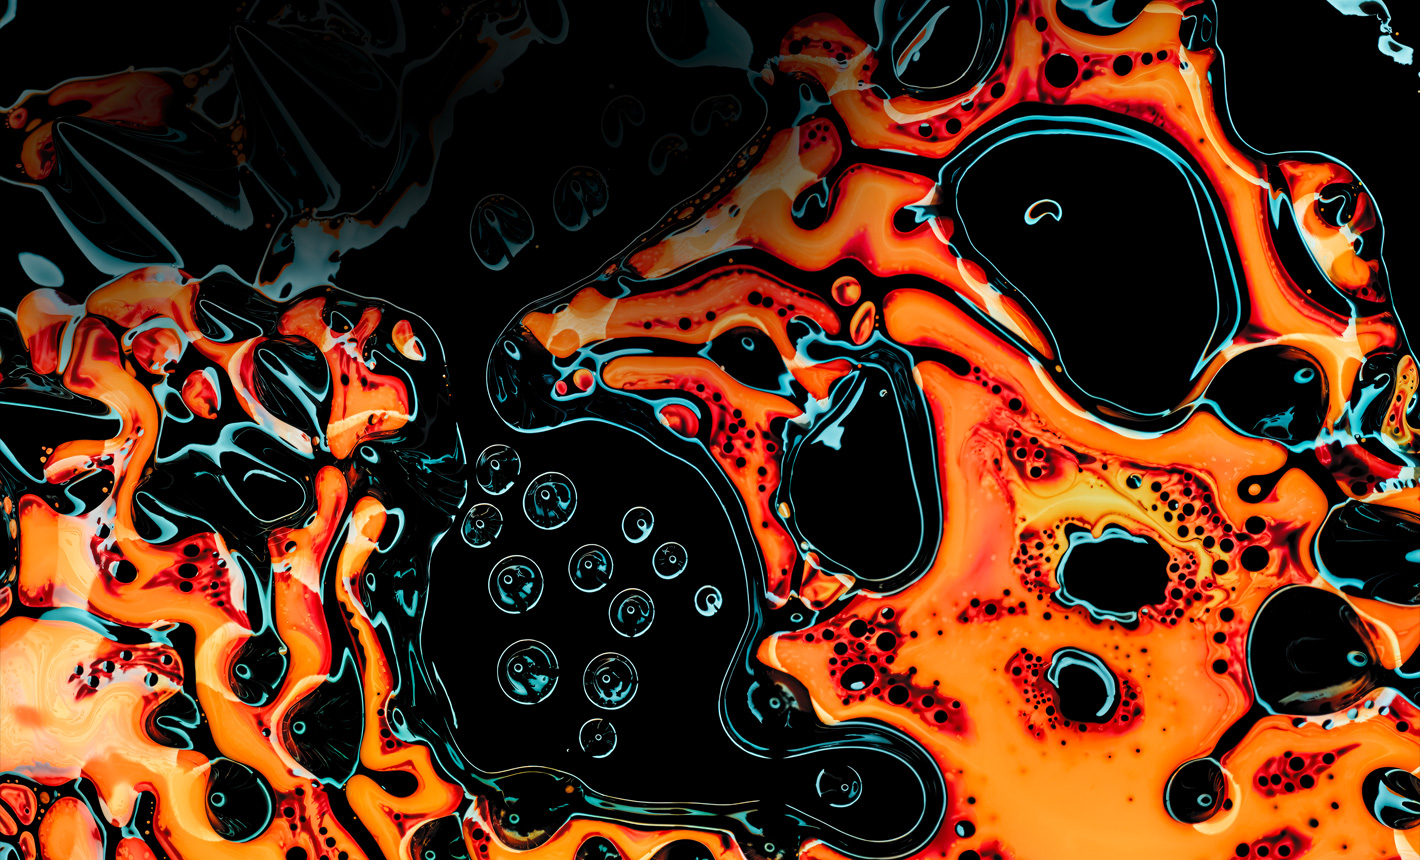 Un motivo astratto formato da un liquido arancione brillante su uno sfondo nero intenso